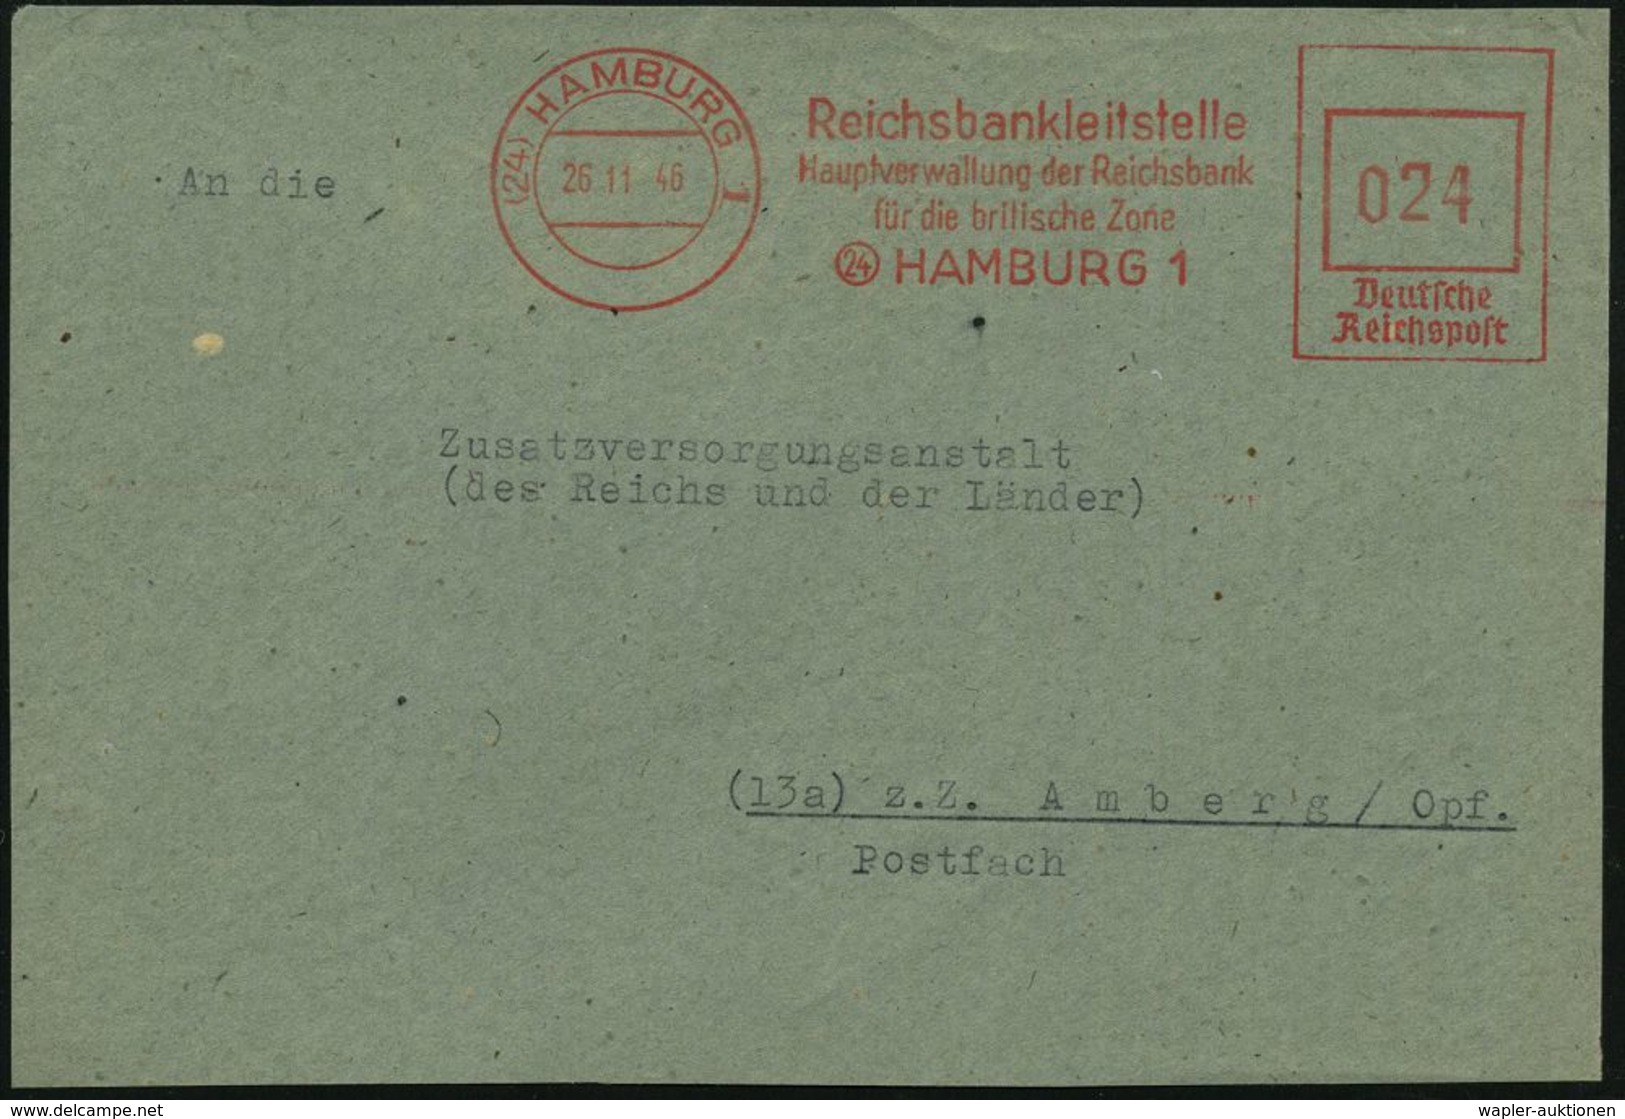 (24) HAMBURG 1/ Reichsbankleitstelle/ Hauptverwaltung Der Reichsbank/ Für Die Britische Zone 1946 (26.11.) Seltener, Apt - Sin Clasificación